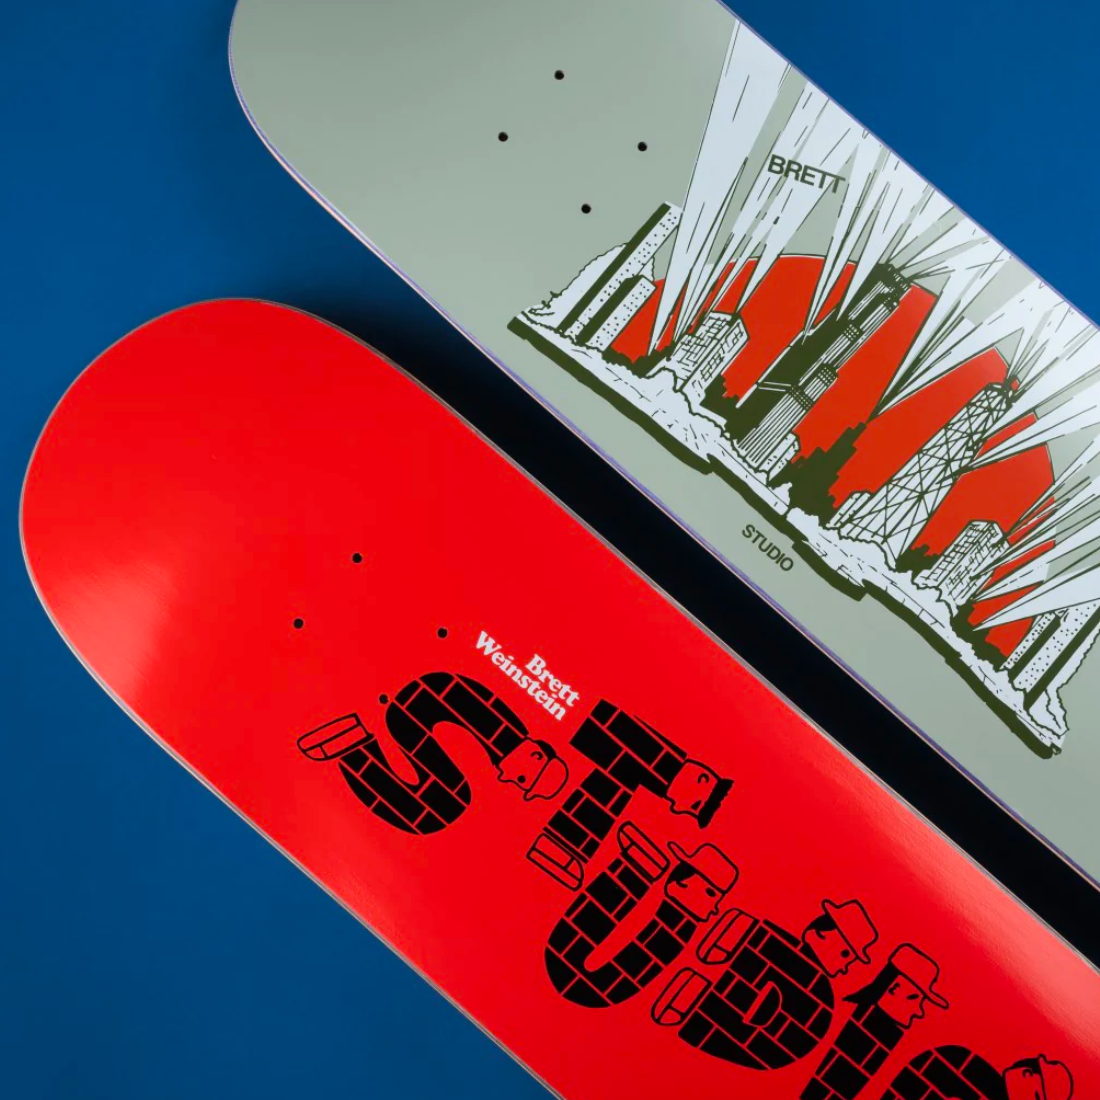 【8.0】Studio Skateboards - Chicago House "Brett Weinstein"